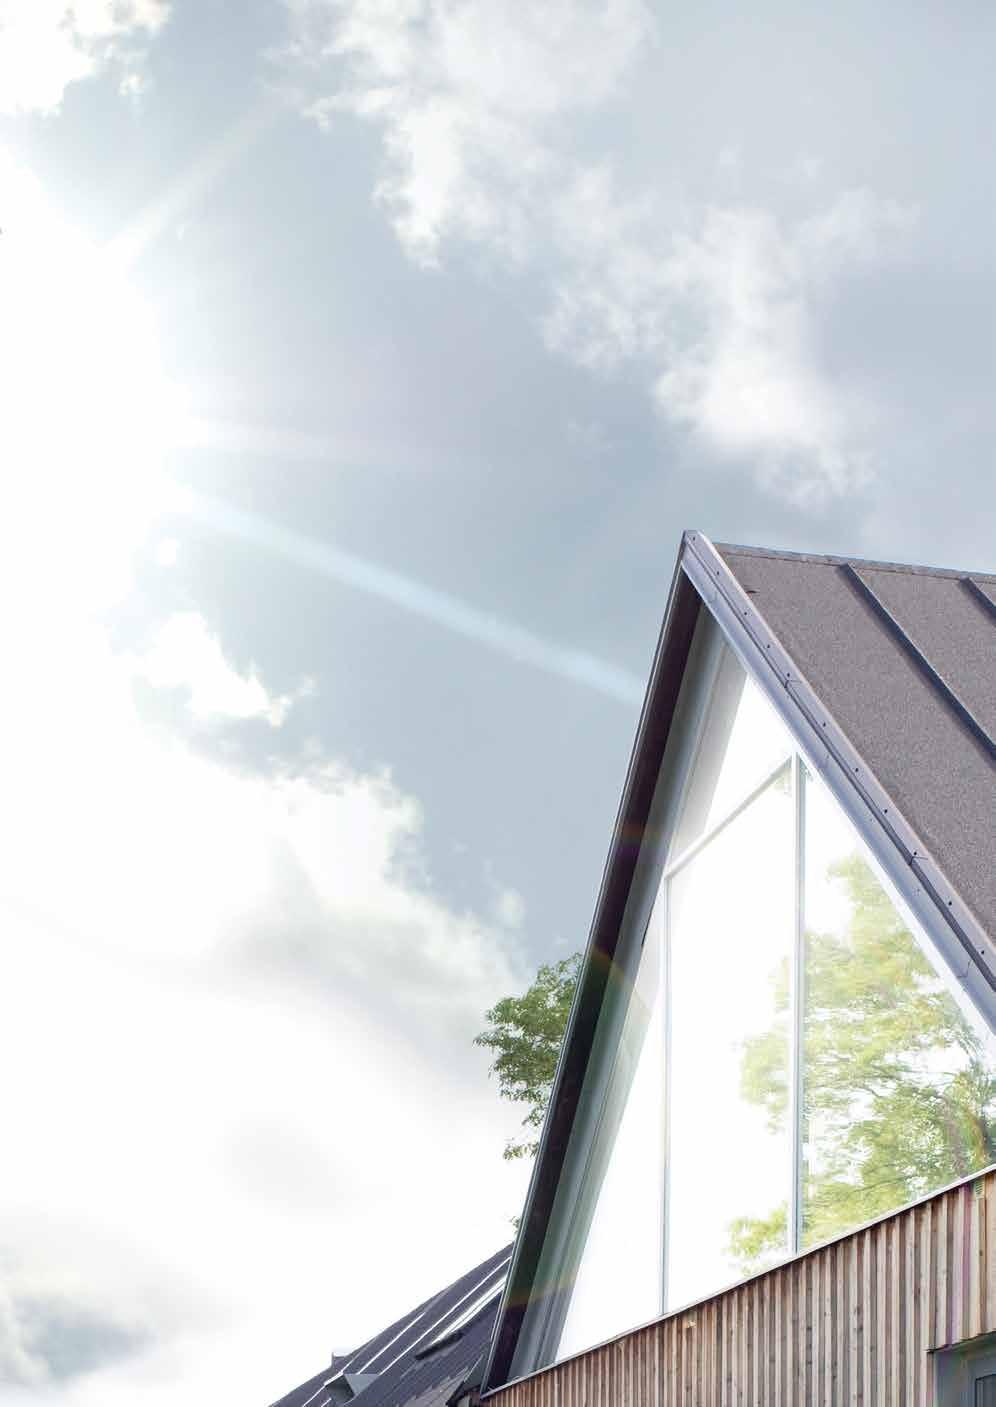 Festemateriell for NIBE solvarmepakker Solpanelene anbefales montert mot syd og med 35-60 graders vinkel, for best